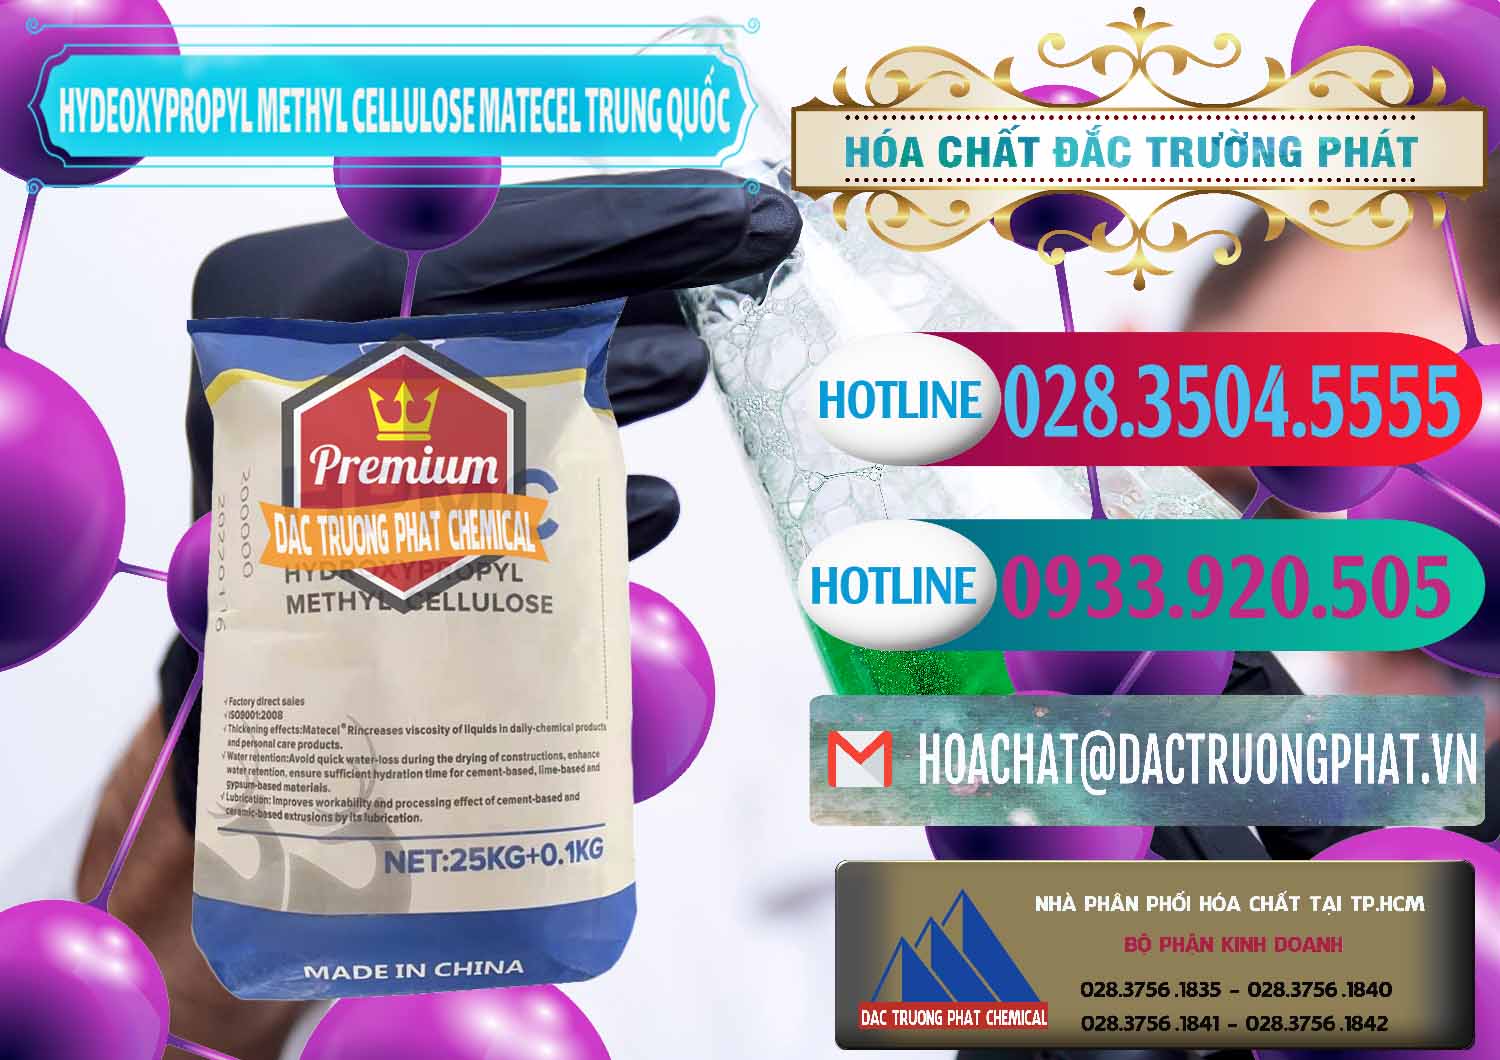 Nhập khẩu - bán Chất Tạo Đặc HPMC - Hydroxypropyl Methyl Cellulose Matecel Trung Quốc China - 0396 - Chuyên phân phối - nhập khẩu hóa chất tại TP.HCM - truongphat.vn